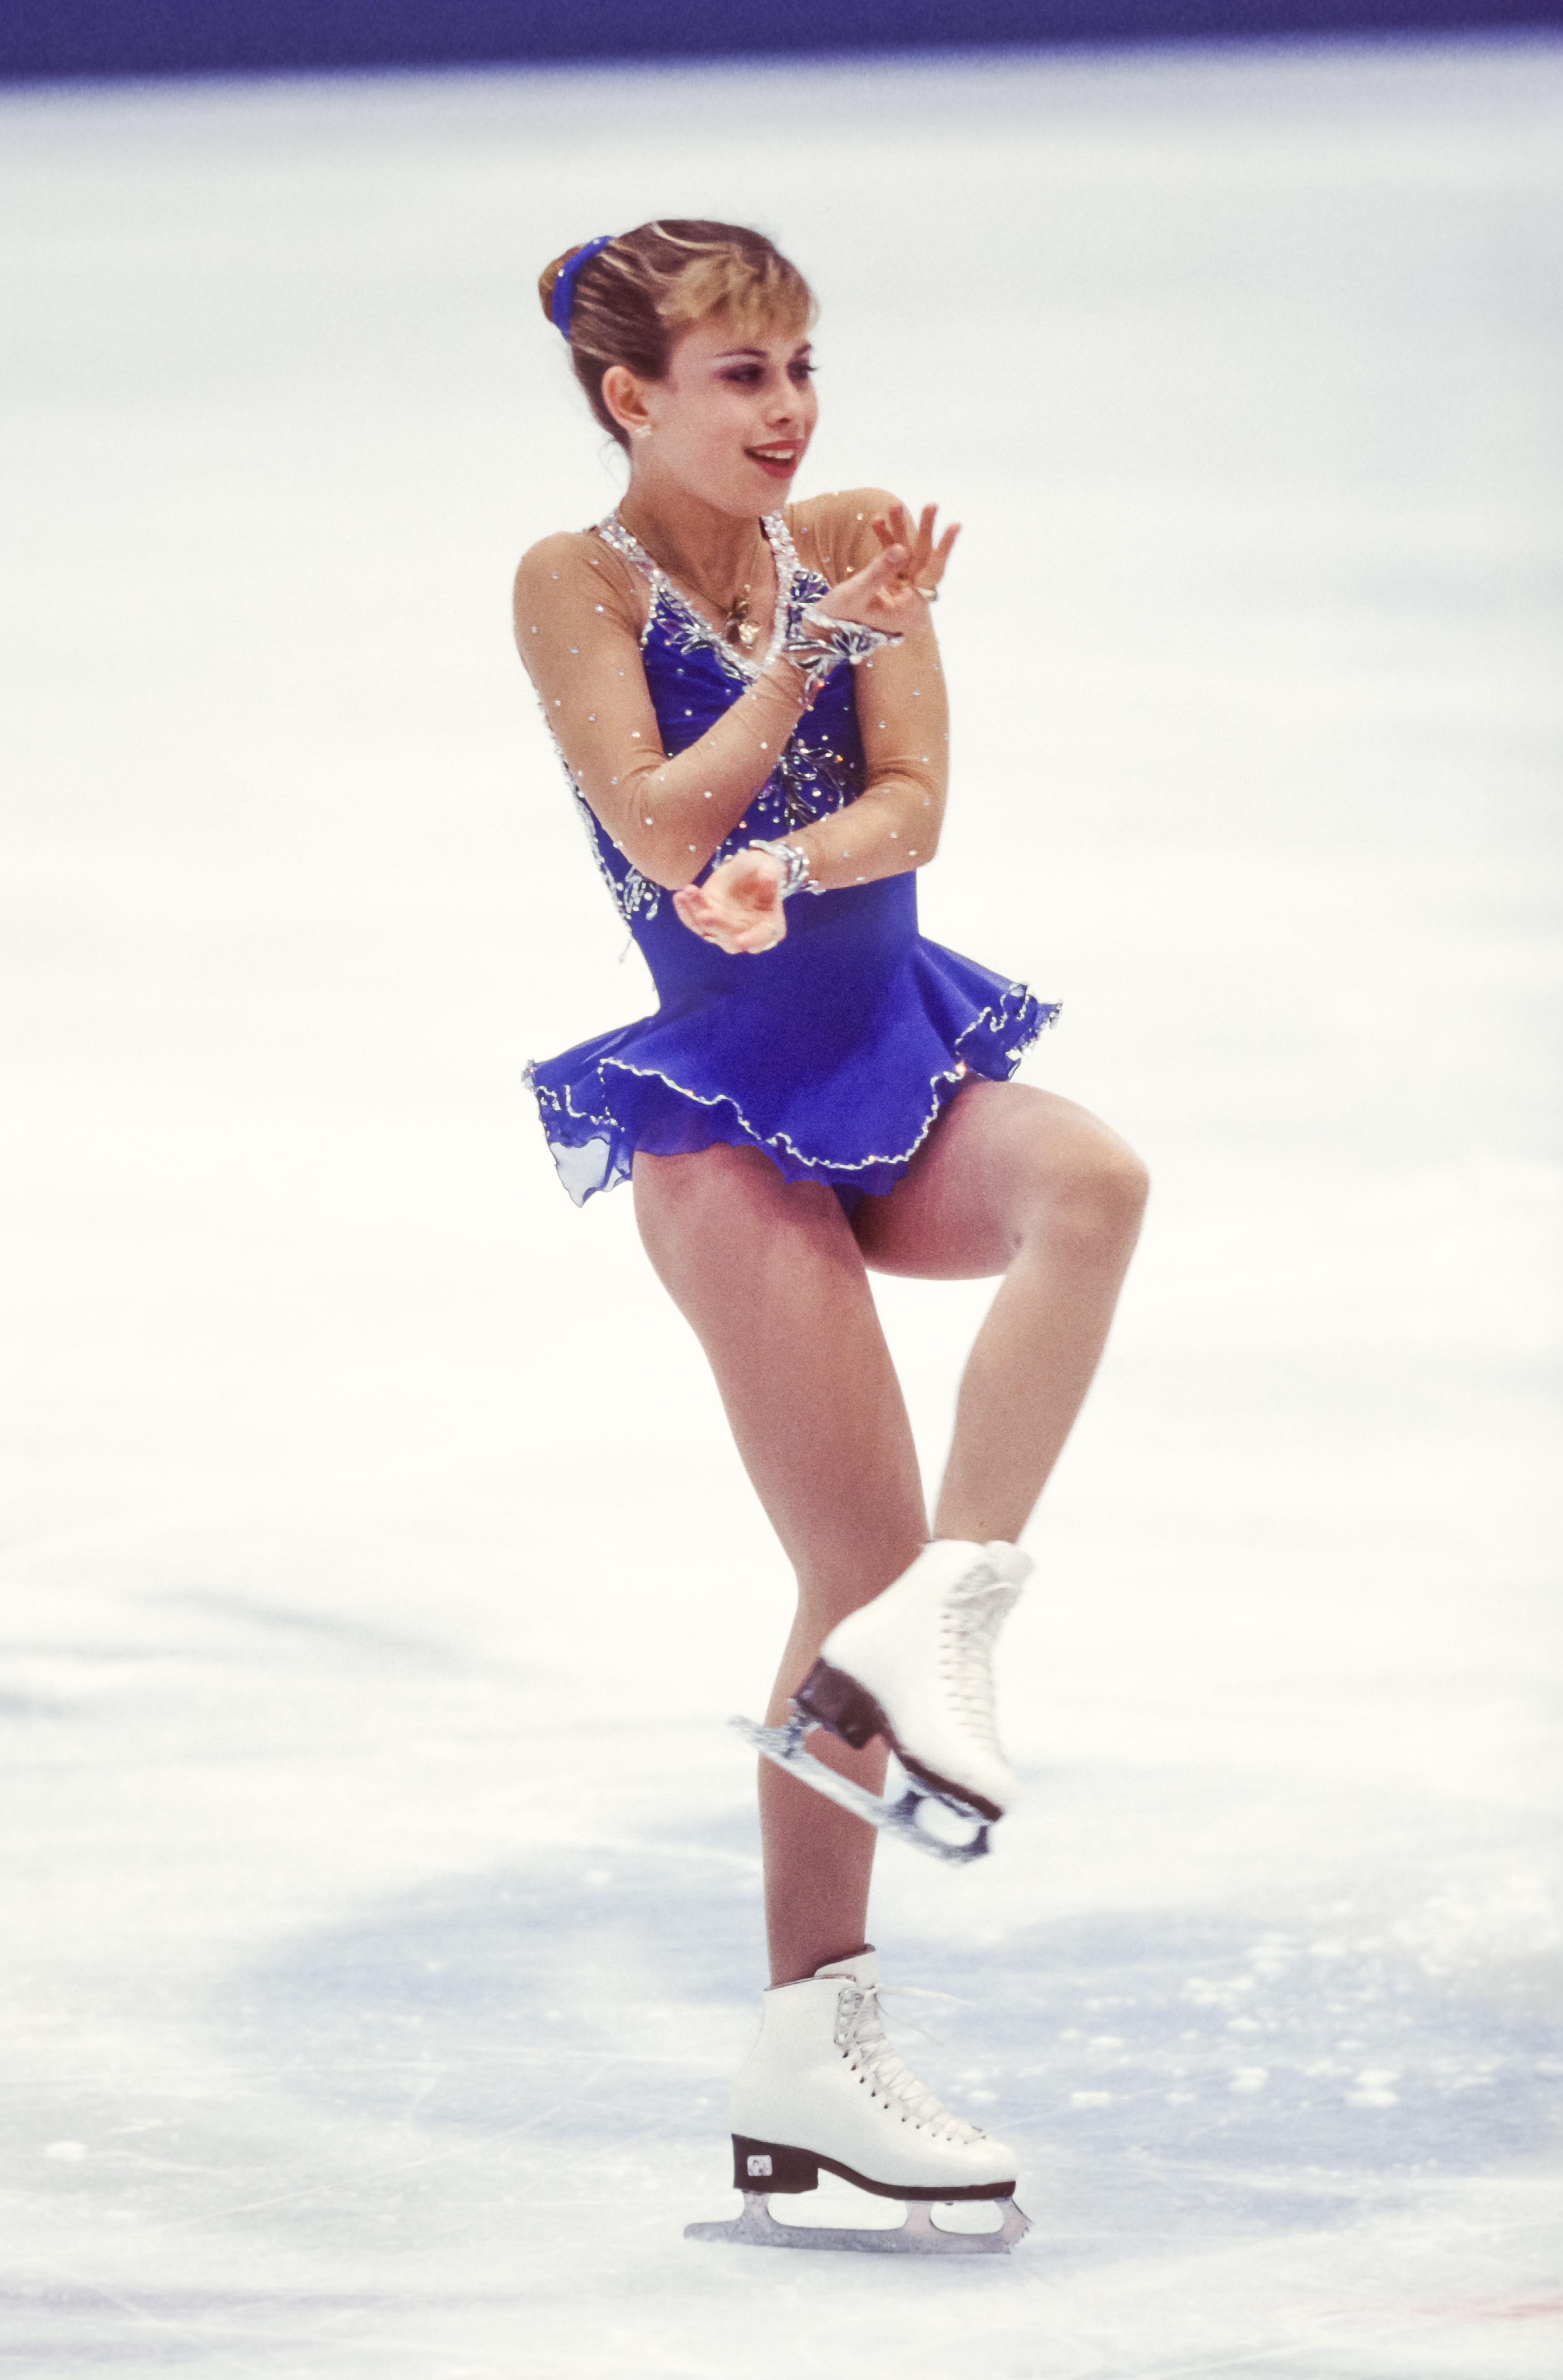 Tara Lipinski, representando a EE.UU., compite en la prueba de patinaje artístico individual femenino de patinaje libre en los Juegos Olímpicos de Invierno el 20 de febrero de 1998, en Nagano, Japón | Foto: Getty Images